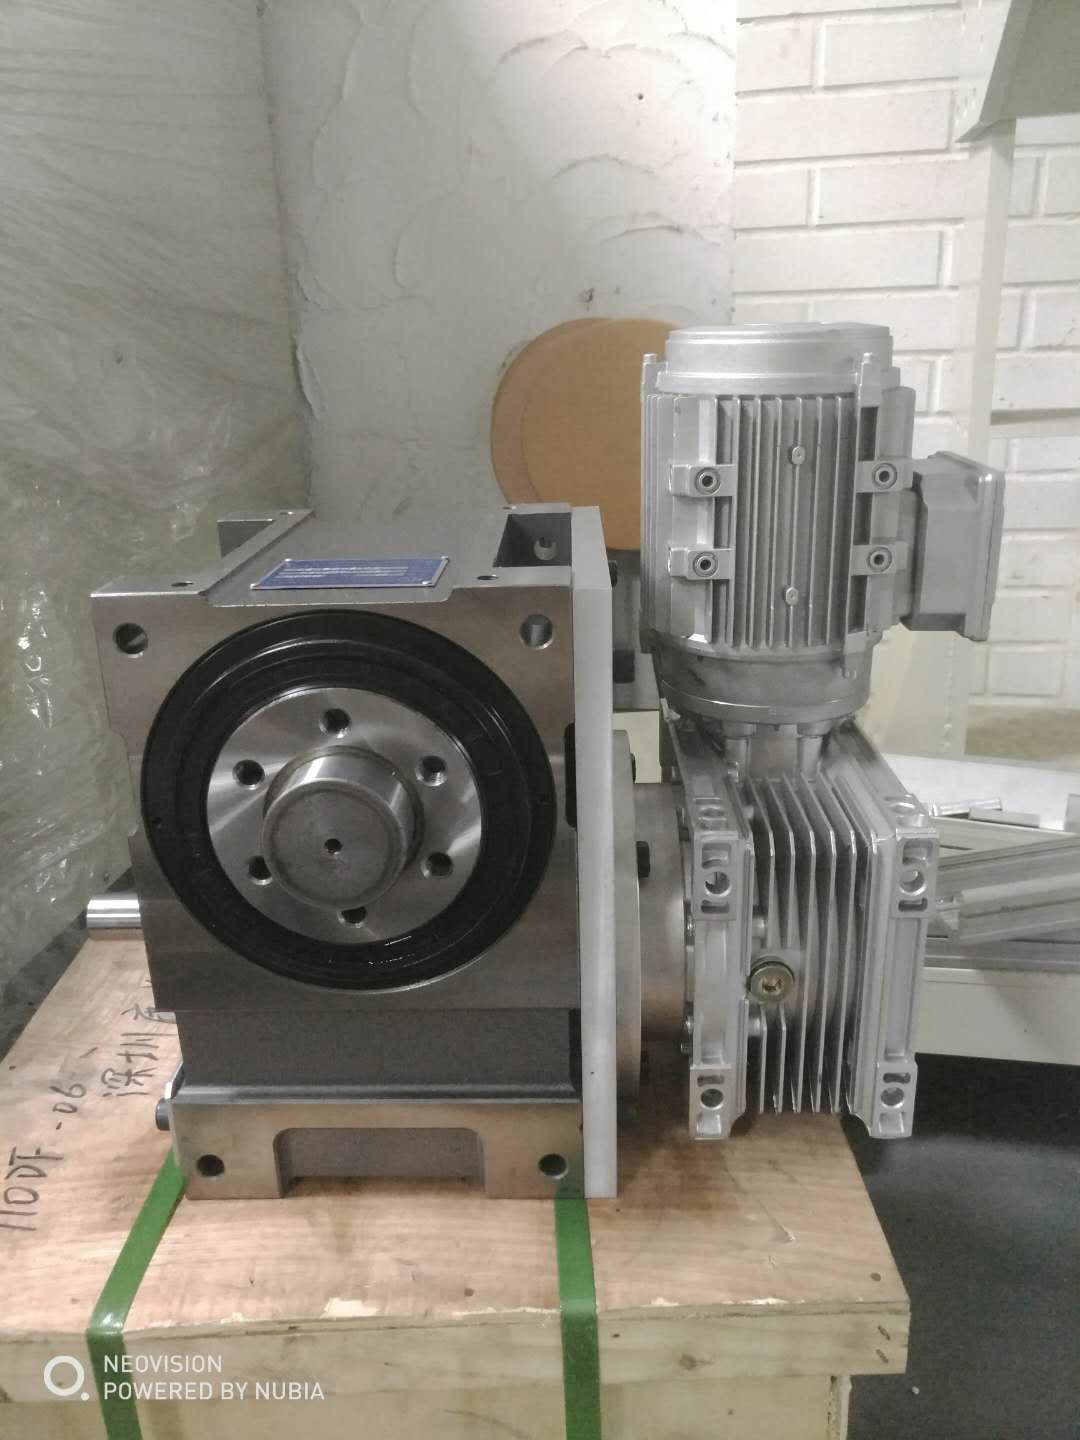 凸轮分割器  深圳分度盘厂家 CNC分度盘电动分度盘价格